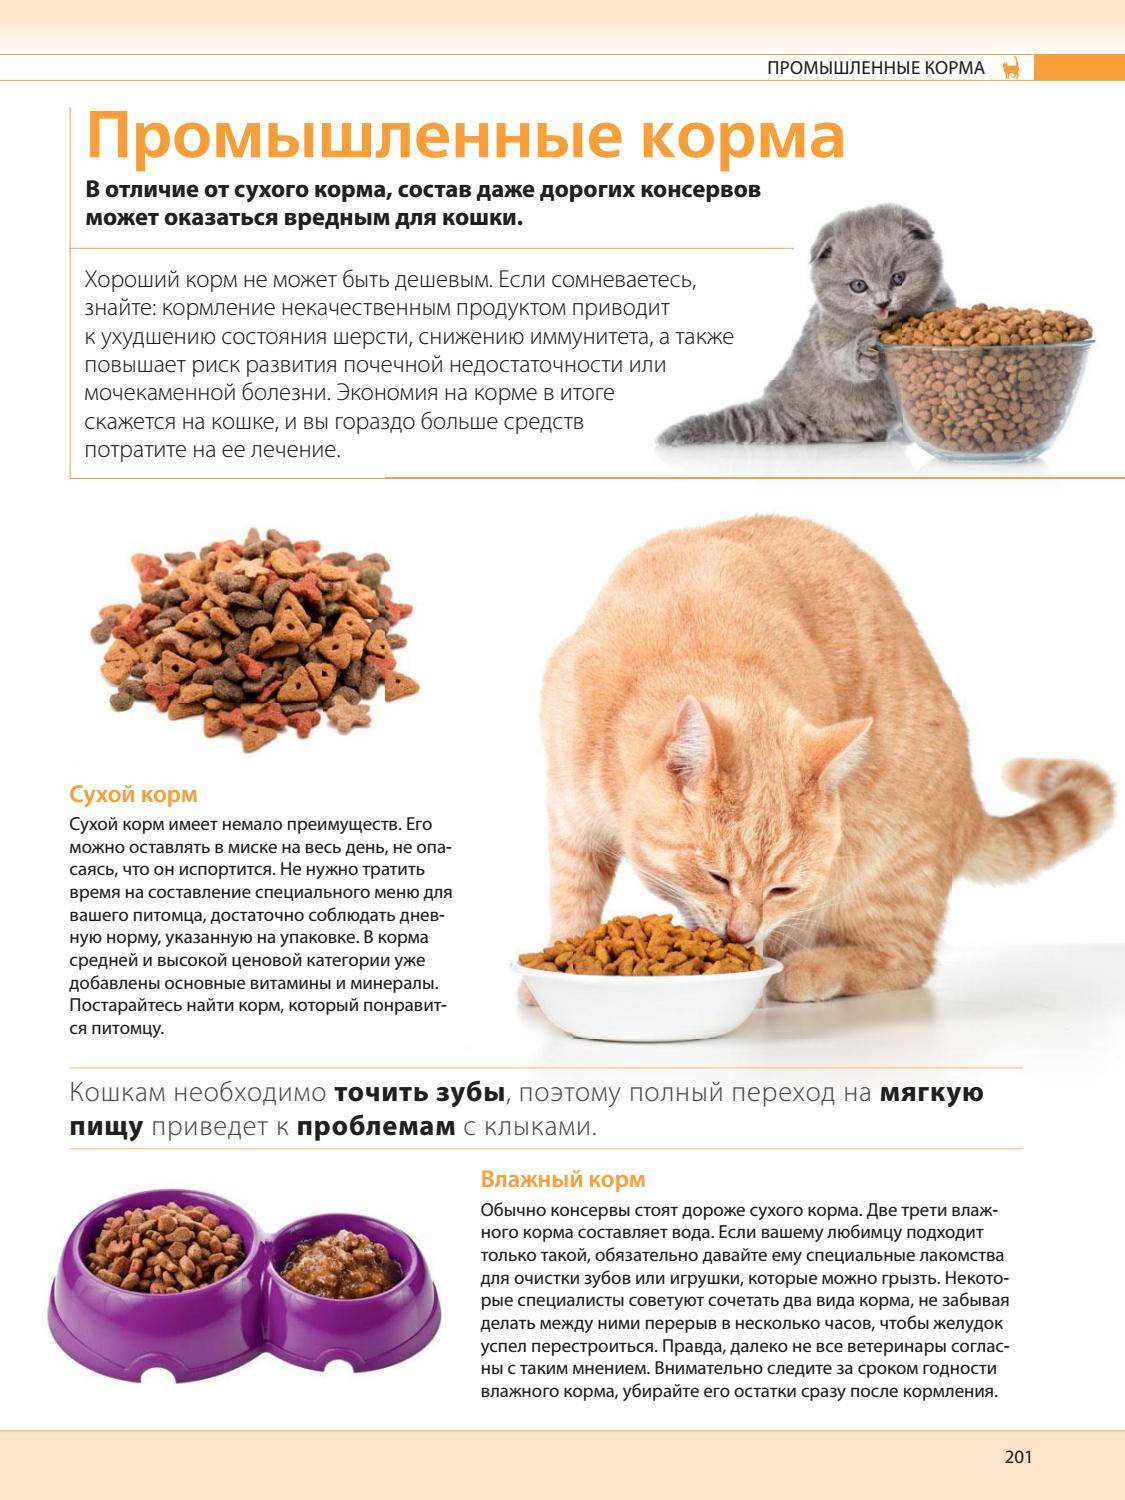 Можно ли кошку кормить только сухим кормом, какие могут быть последствия?